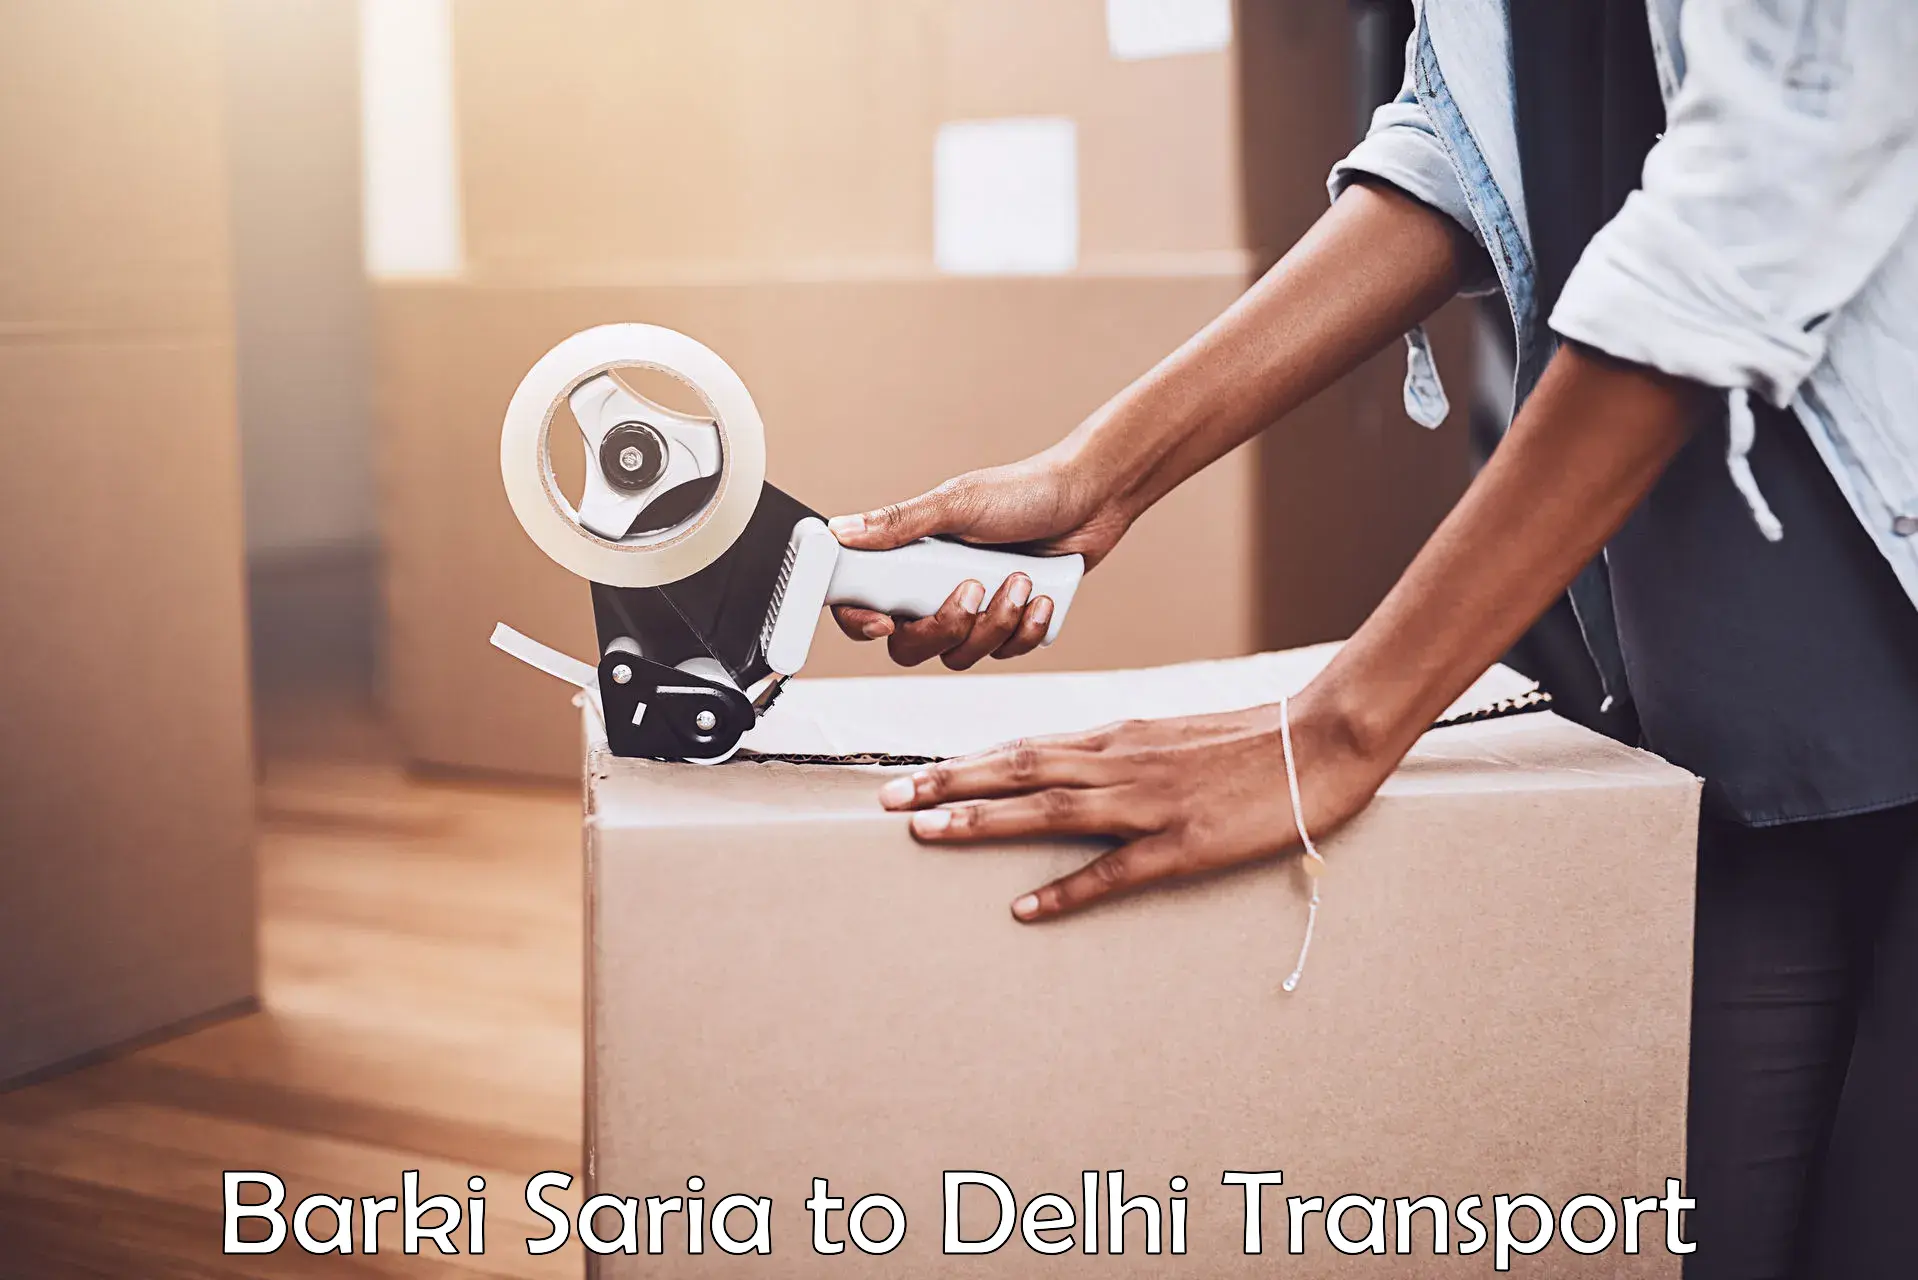 Online transport service Barki Saria to Delhi Technological University DTU